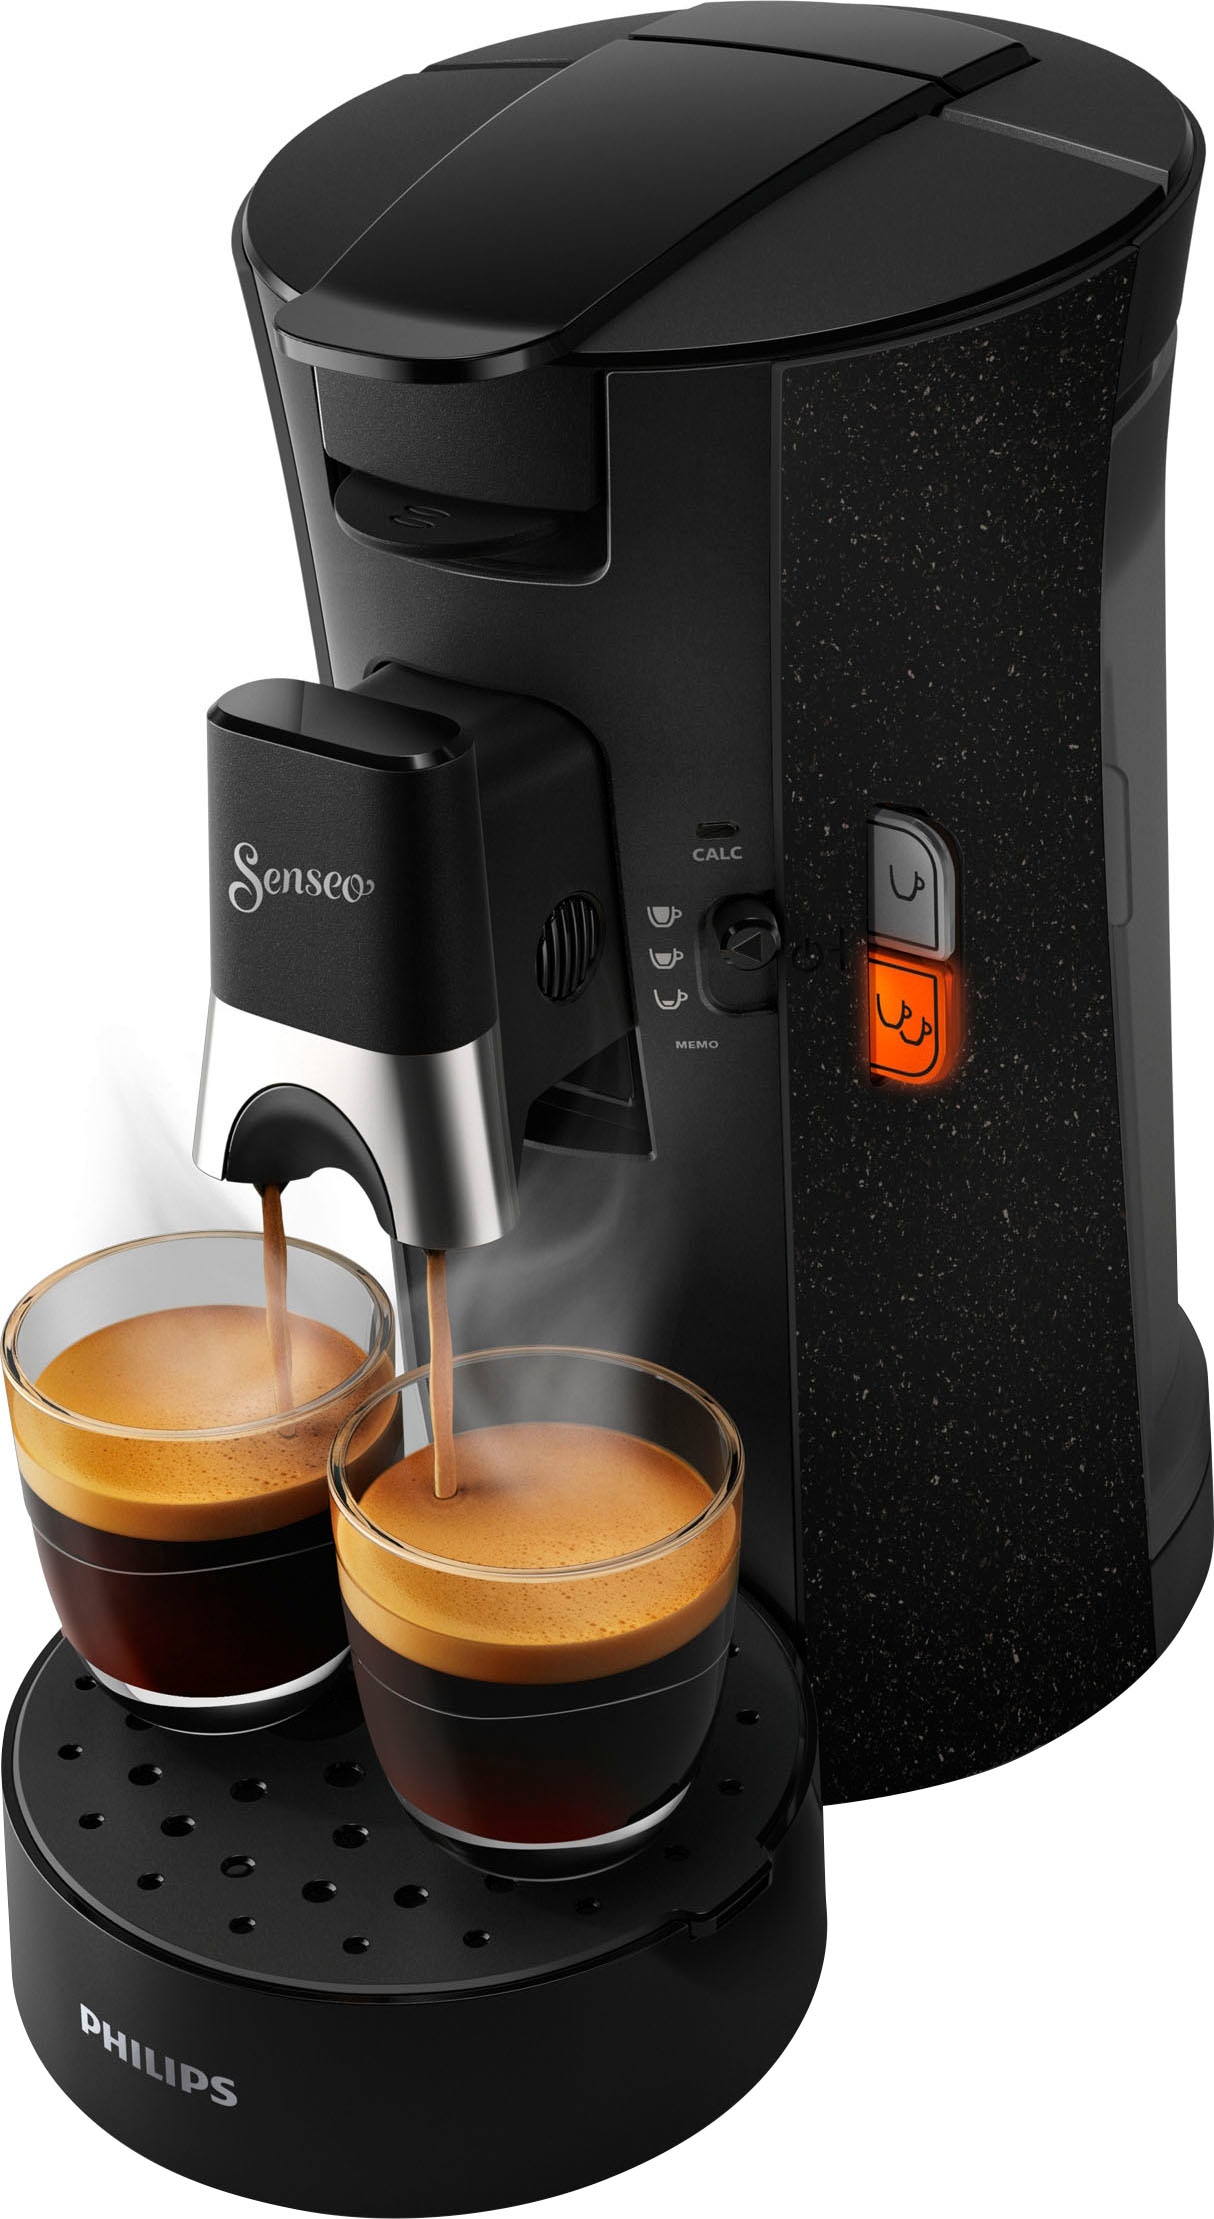 Philips Senseo Kaffeepadmaschine »Select ECO Wert von Garantie Jahren mit 3 UVP, XXL schwarz im inkl. - CSA240/20«, Gratis- € Zugaben 14